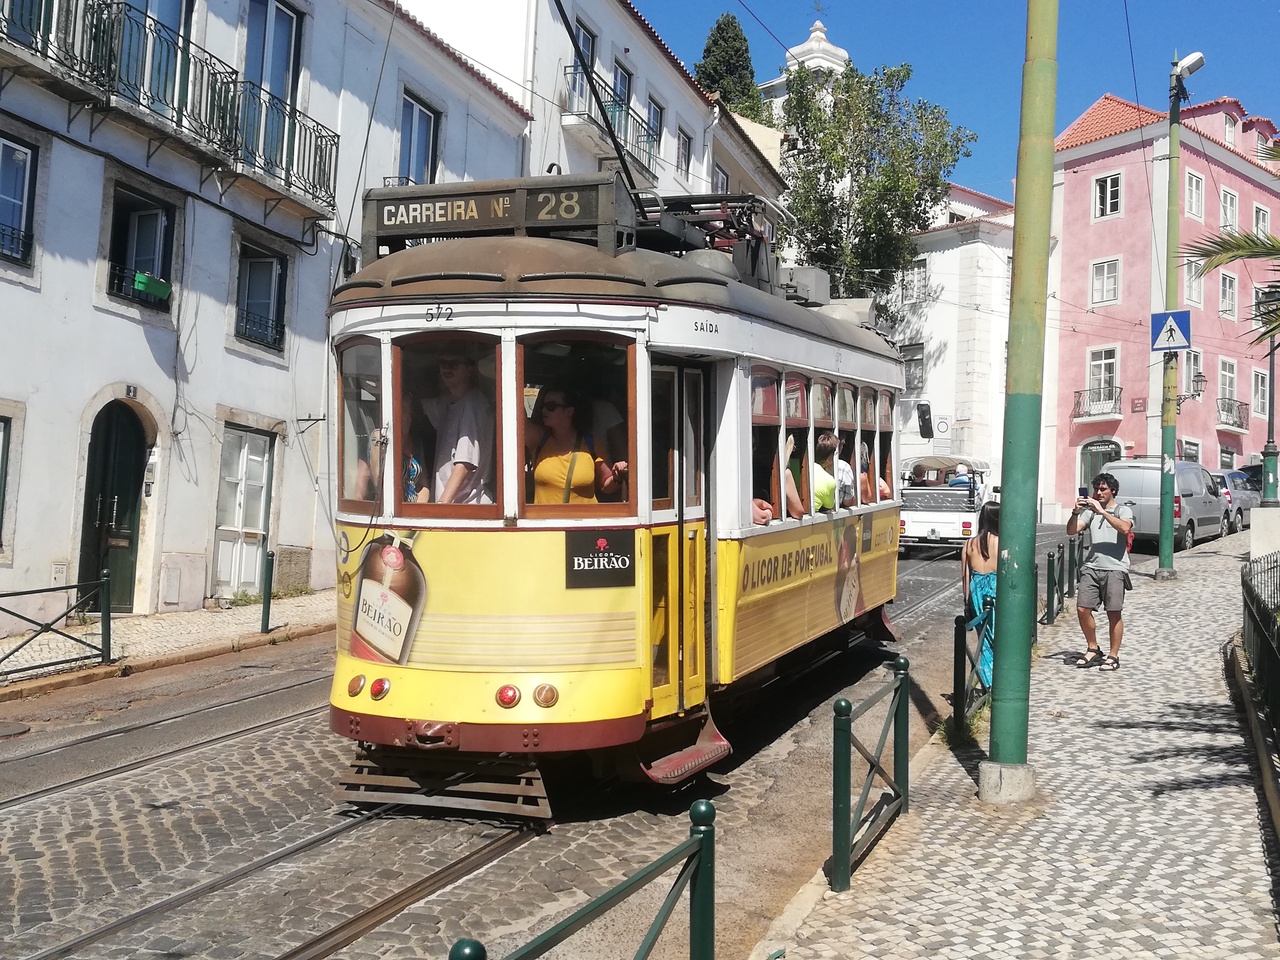 19 9 11 ポルトガル一人旅 リスボン Uber利用について リスボン ポルトガル の旅行記 ブログ By Brendaさん フォートラベル